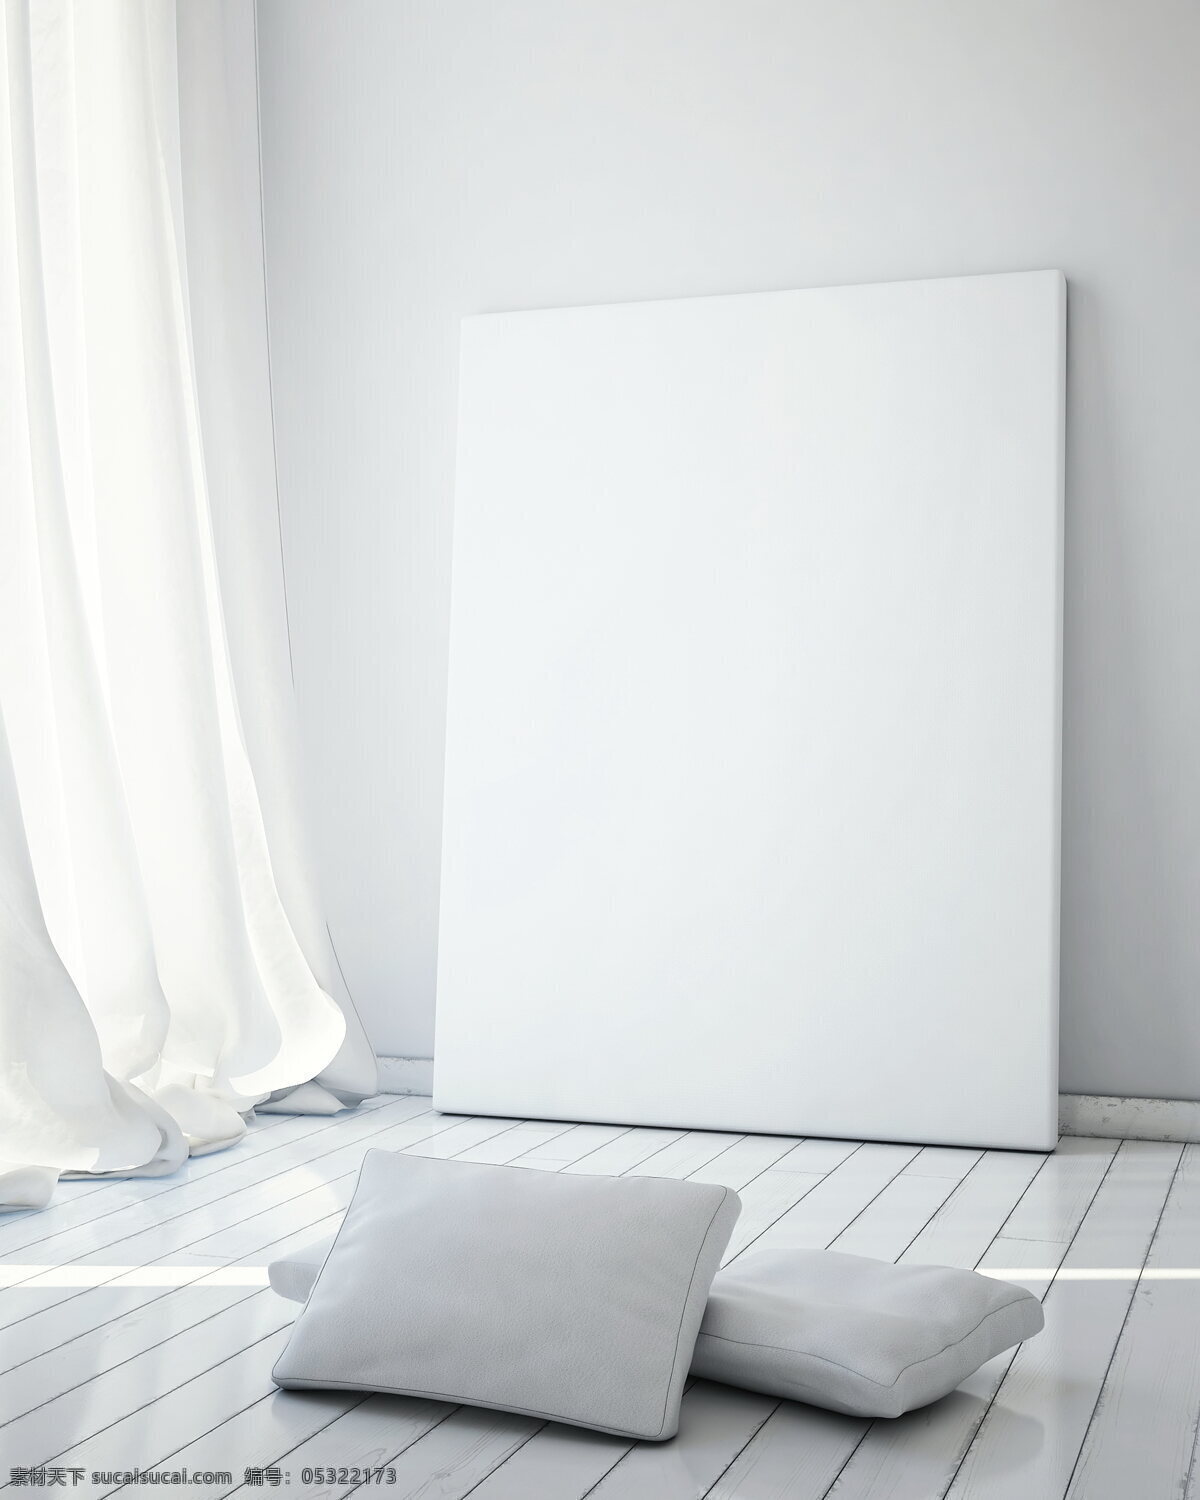 高清 白色 室内 摄影棚 空白 白板 边框 白墙